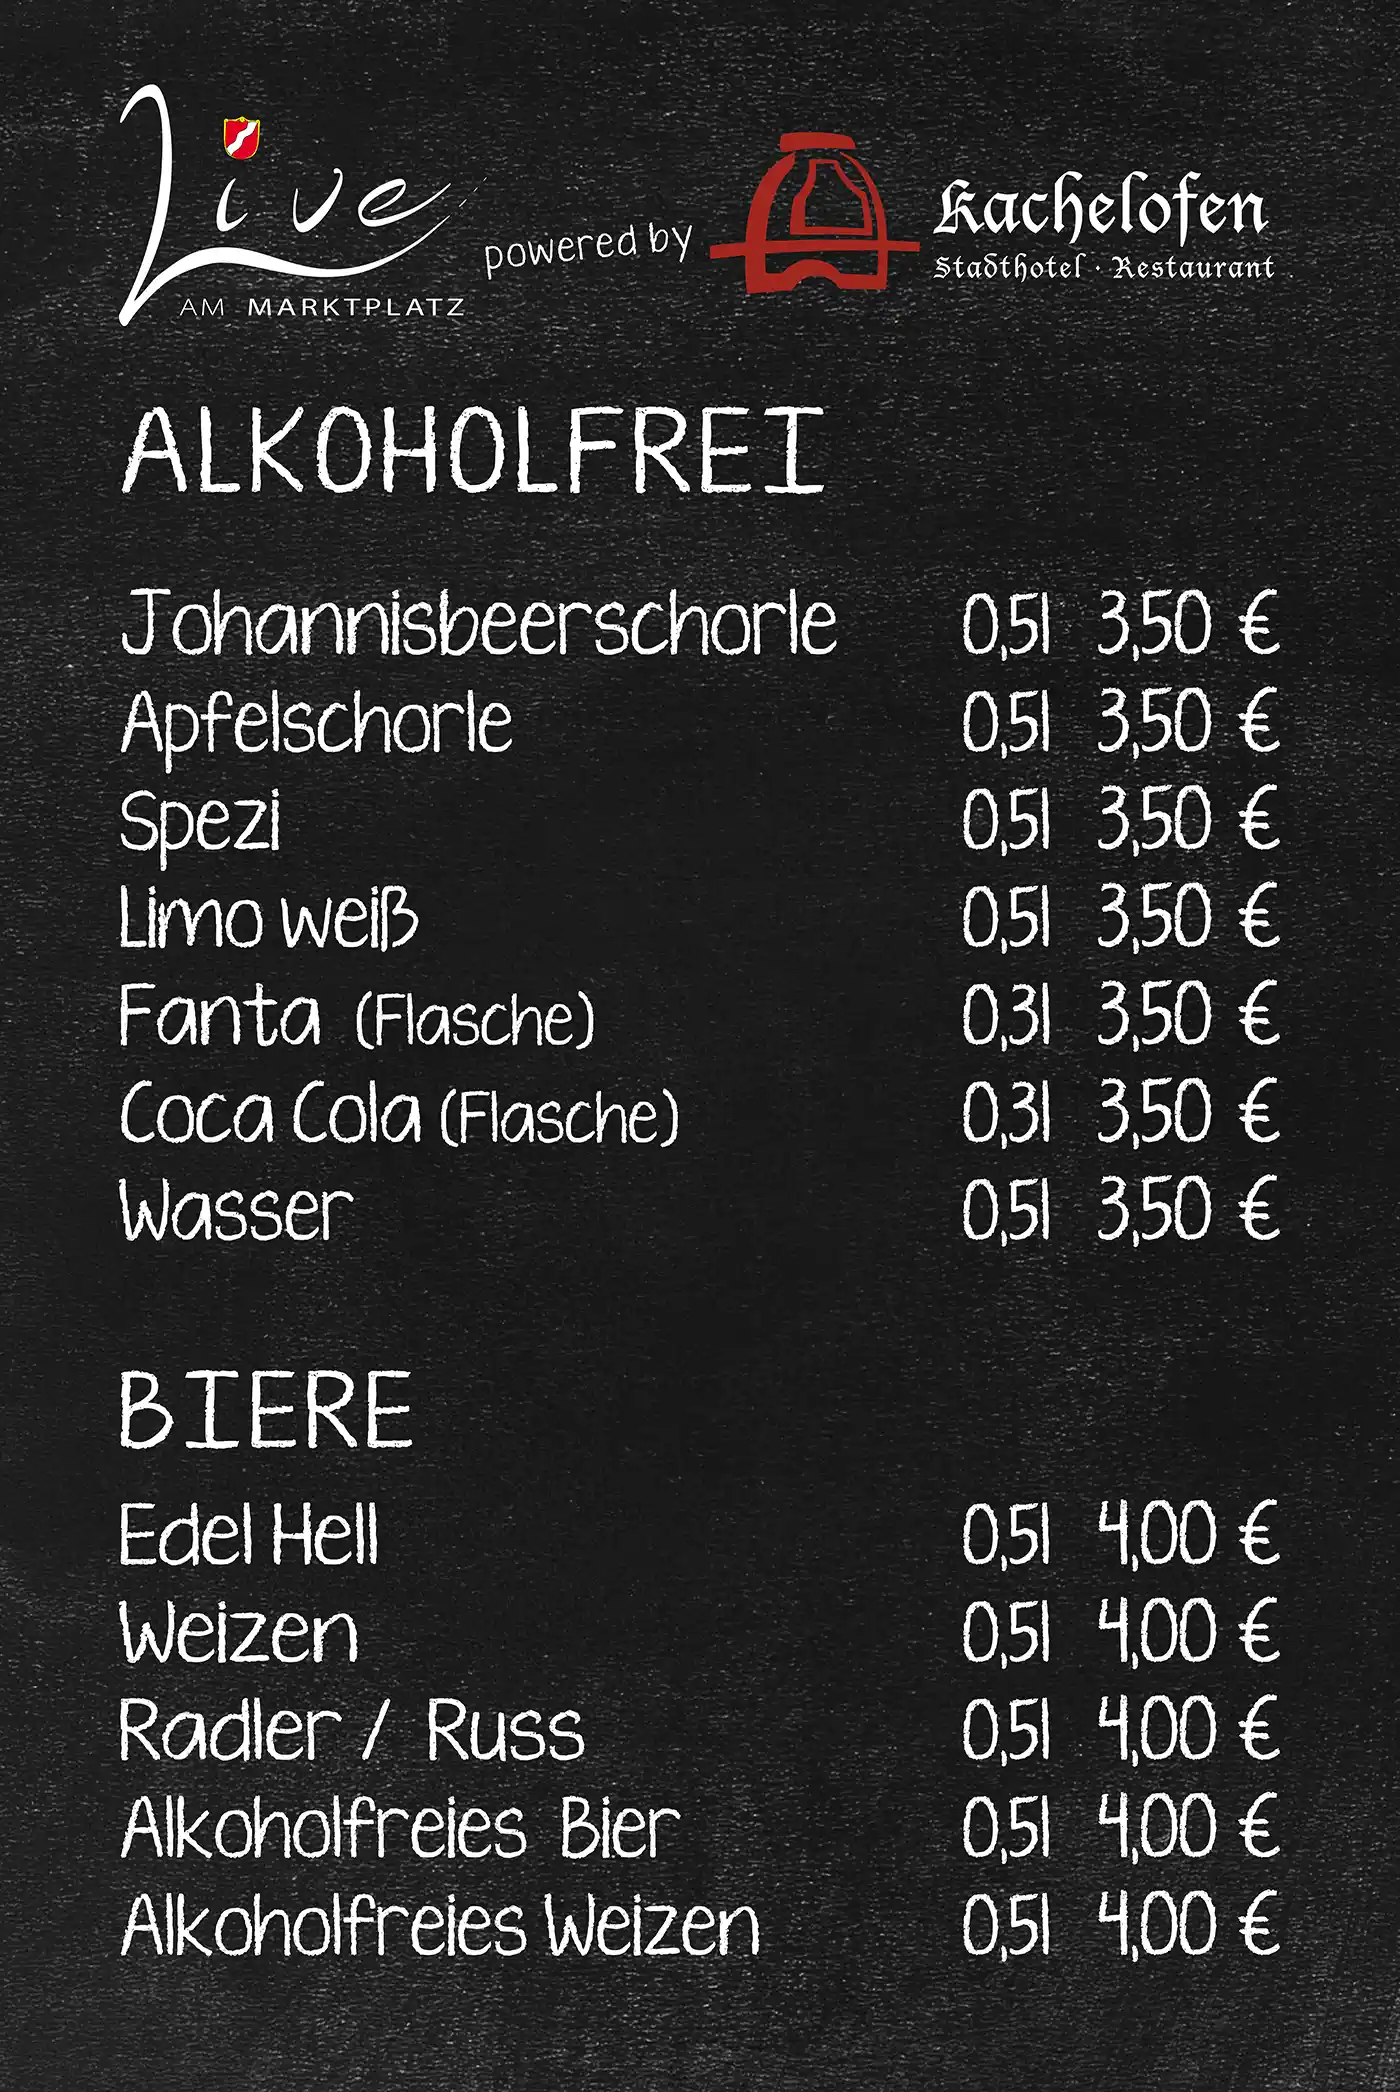 Alkoholfreie Getränke bei Live am Marktplatz in Krumbach